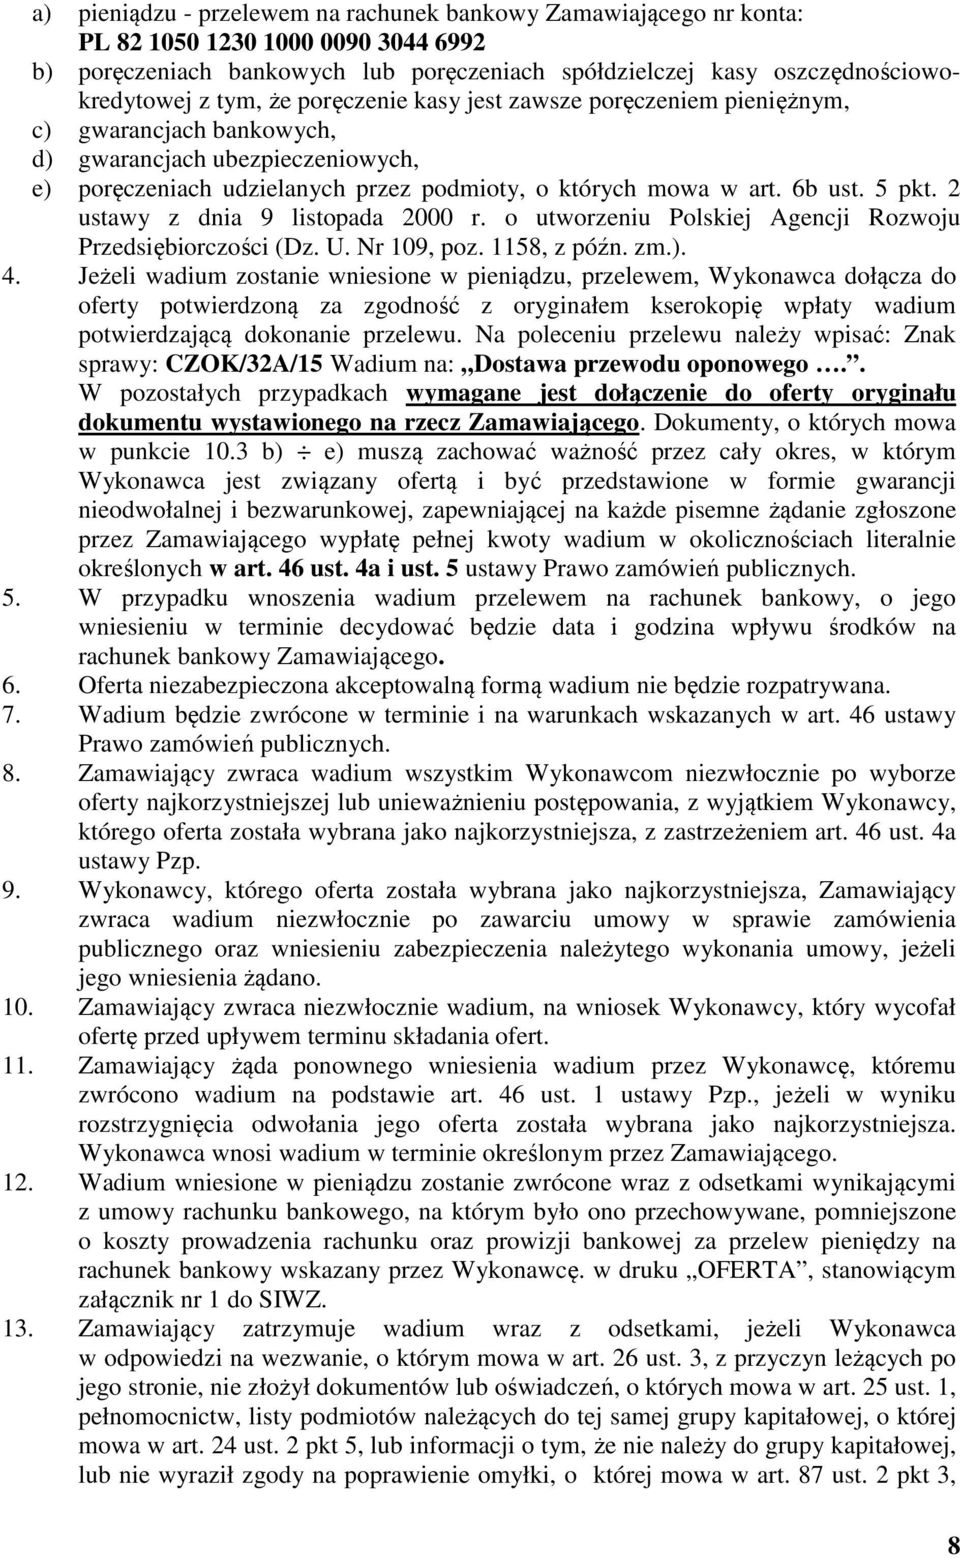 2 ustawy z dnia 9 listopada 2000 r. o utworzeniu Polskiej Agencji Rozwoju Przedsiębiorczości (Dz. U. Nr 109, poz. 1158, z późn. zm.). 4.